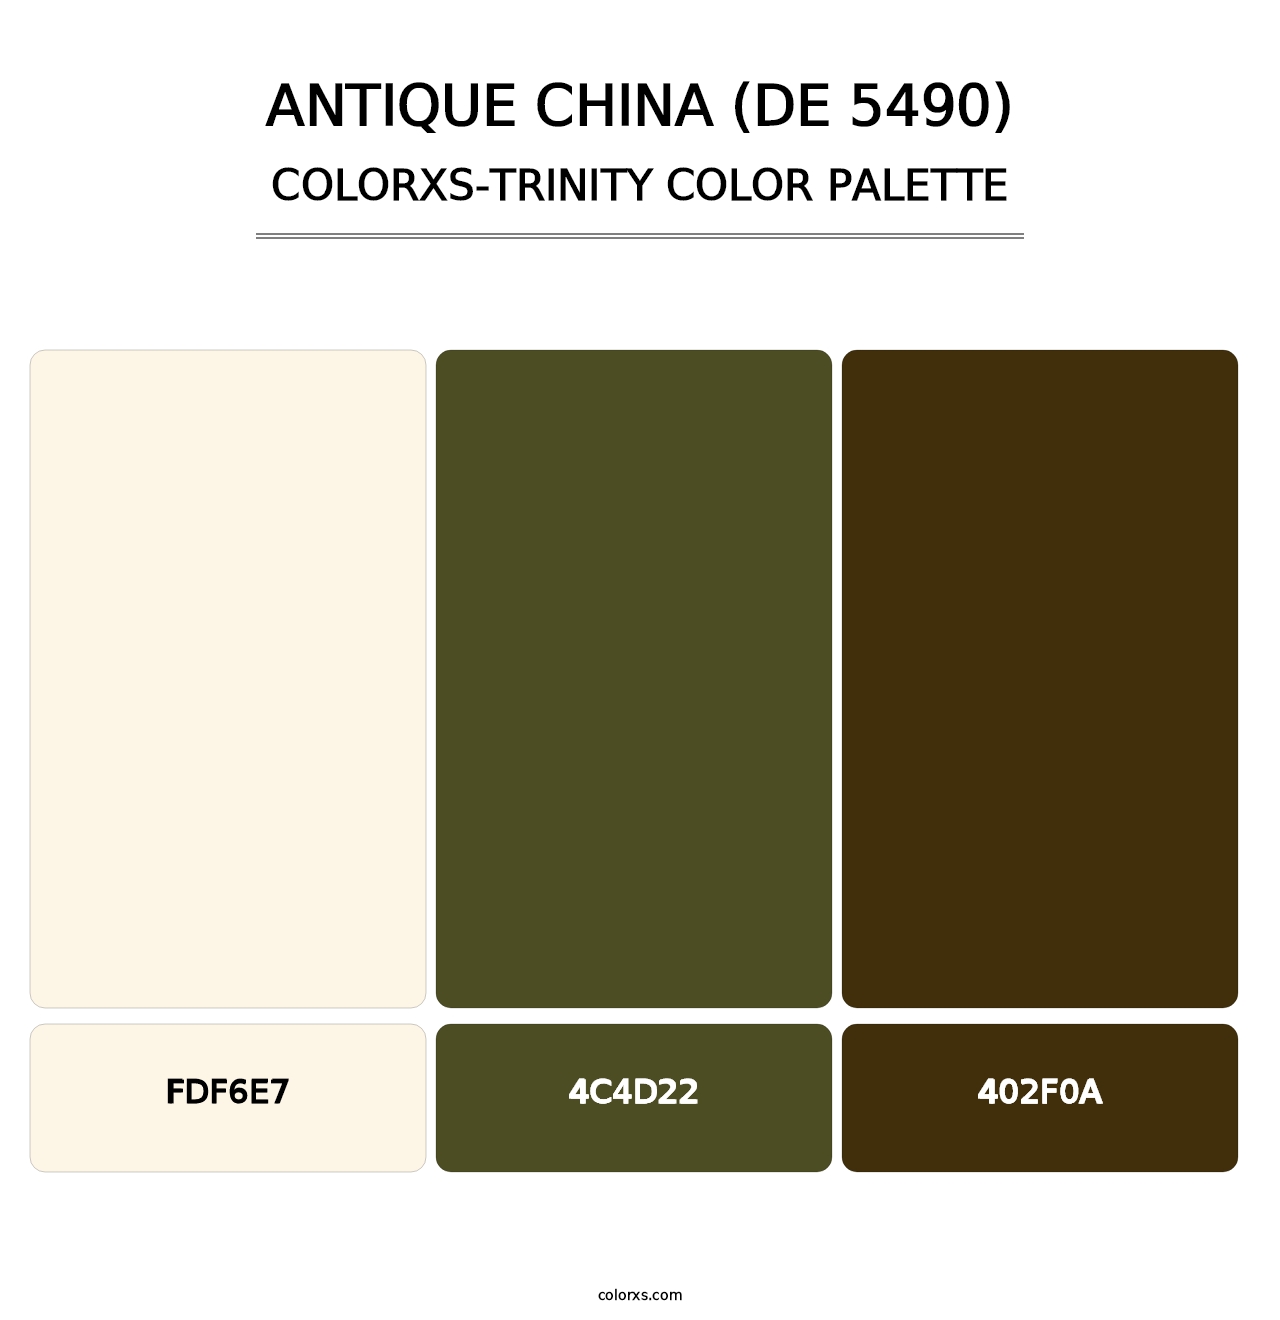 Antique China (DE 5490) - Colorxs Trinity Palette